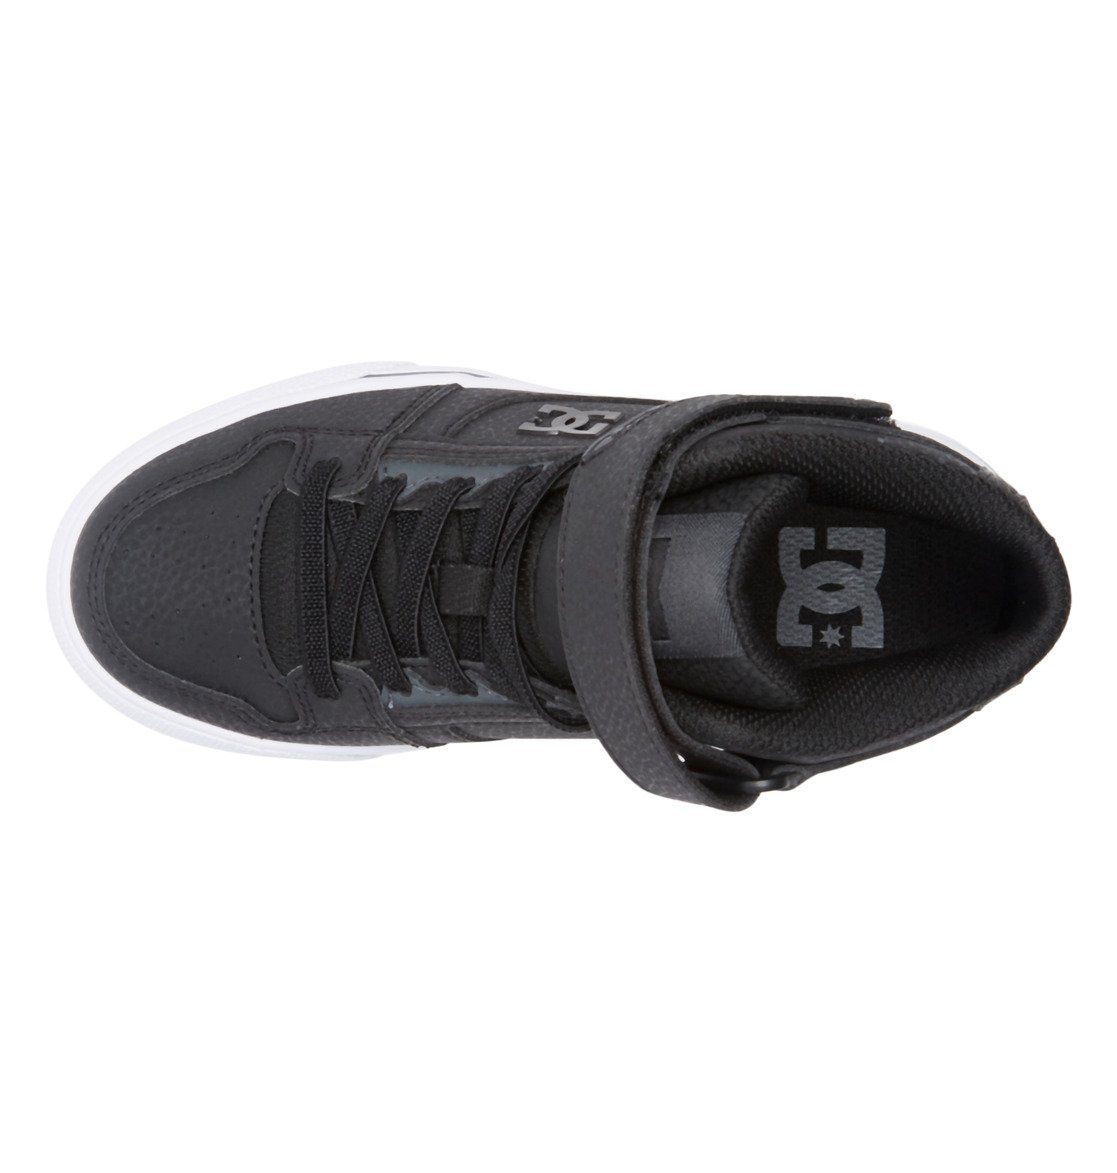 Hi Pure SE Black/White/Black Sneaker DC Shoes